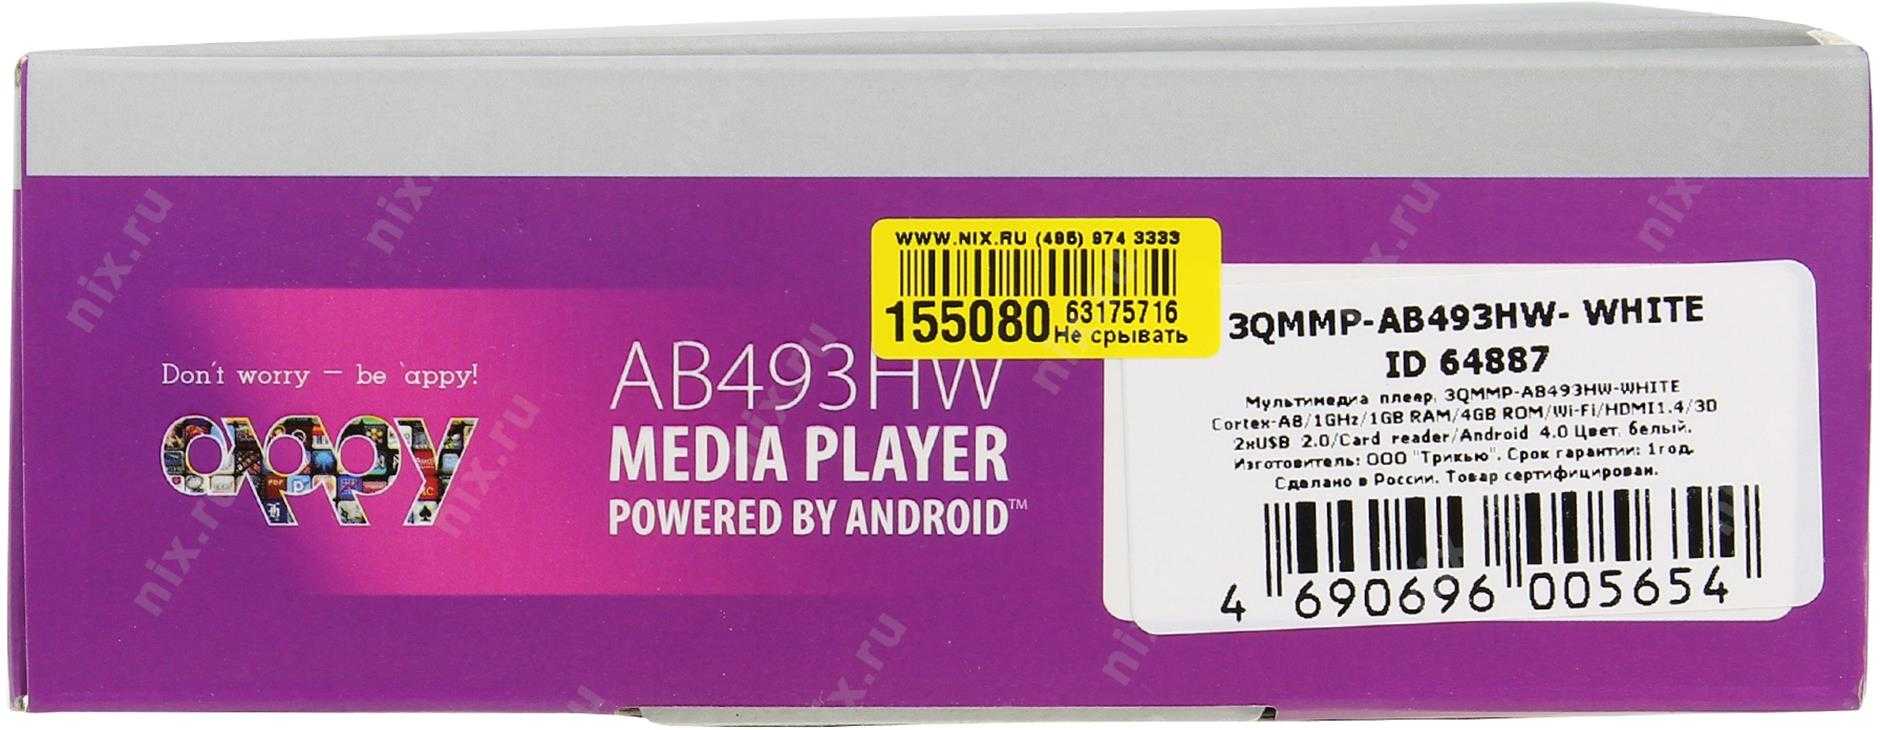 Медиаплеер 3q 3qmmp-ab492hw — купить, цена и характеристики, отзывы